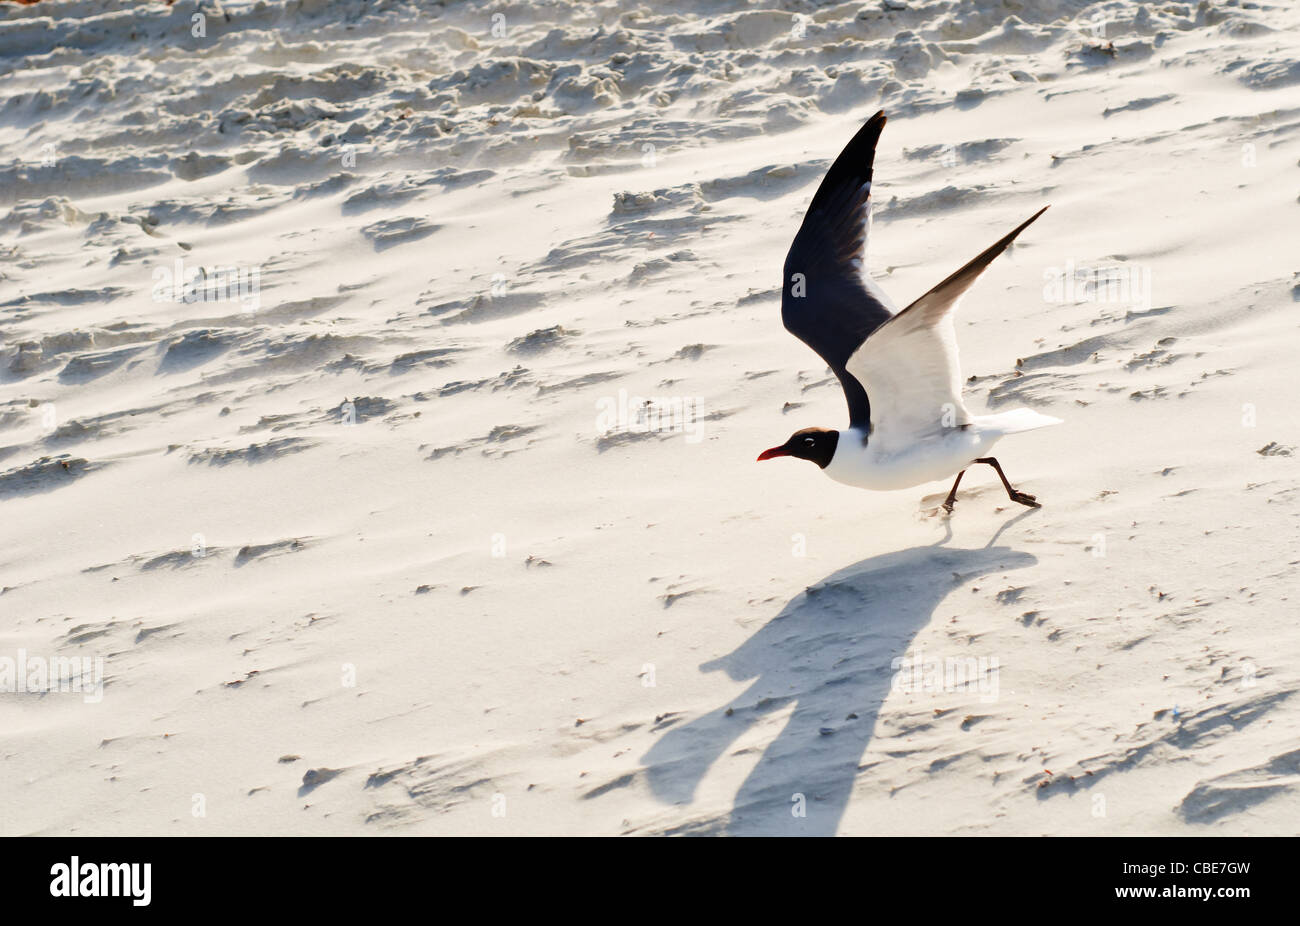 Sea gull taking off in flight on sandy beach Stock Photo